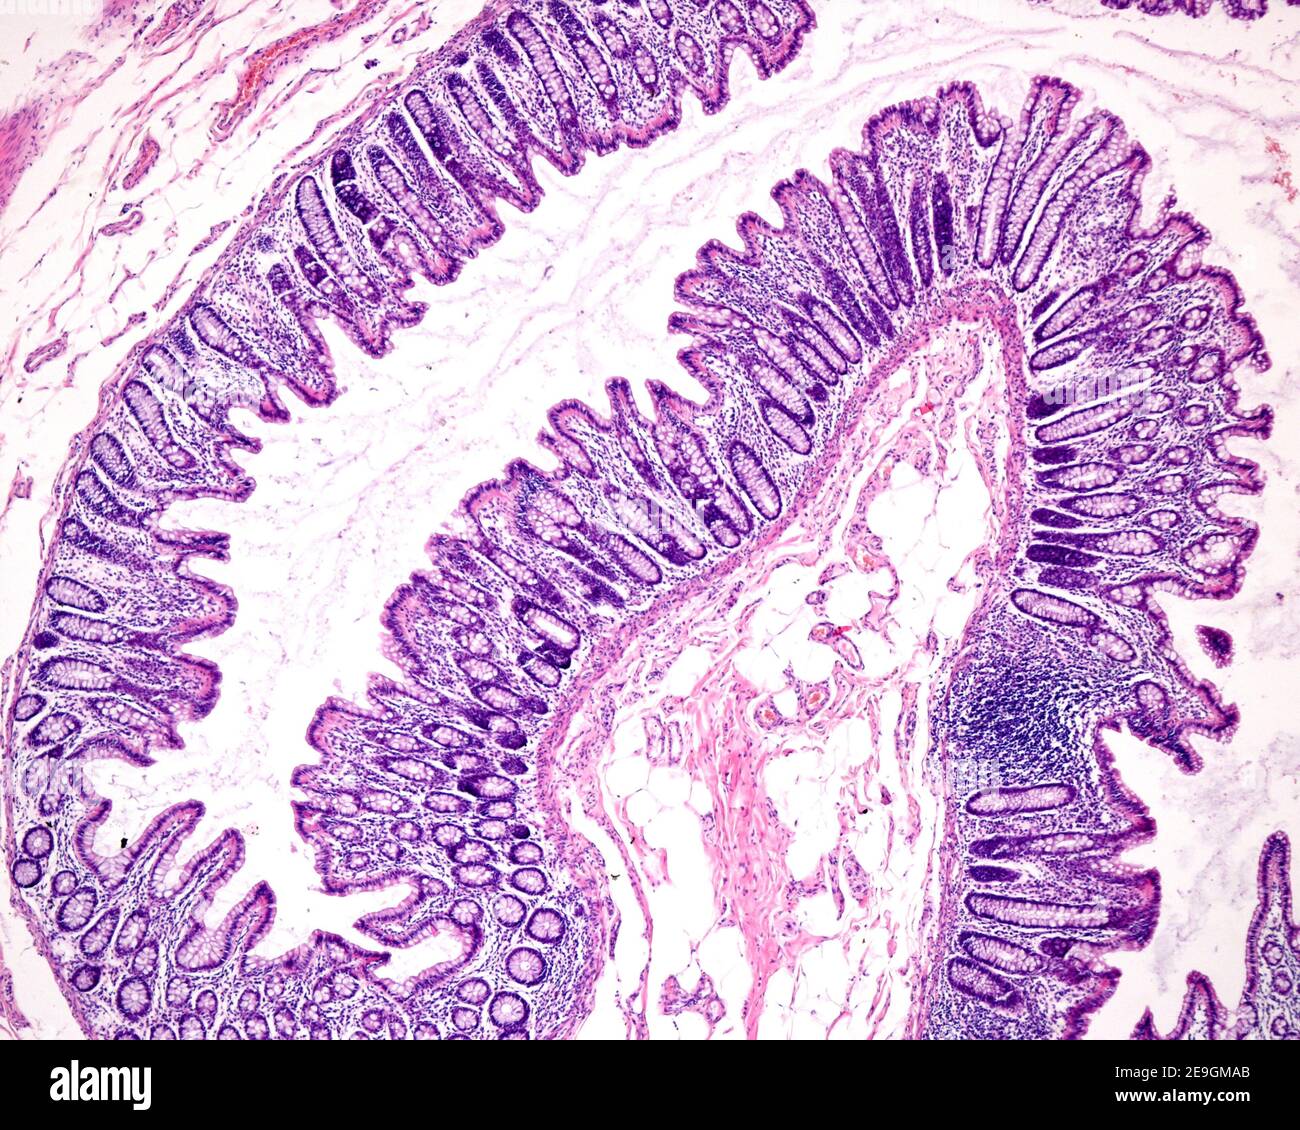 Schleimhaut des Dickdarms mit Lieberkühn-Krypten, ausgekleidet mit zahlreichen Kelchzellen des blassen Zytoplasmas. Die rosafarbene Schicht darunter ist die Muscularis Stockfoto